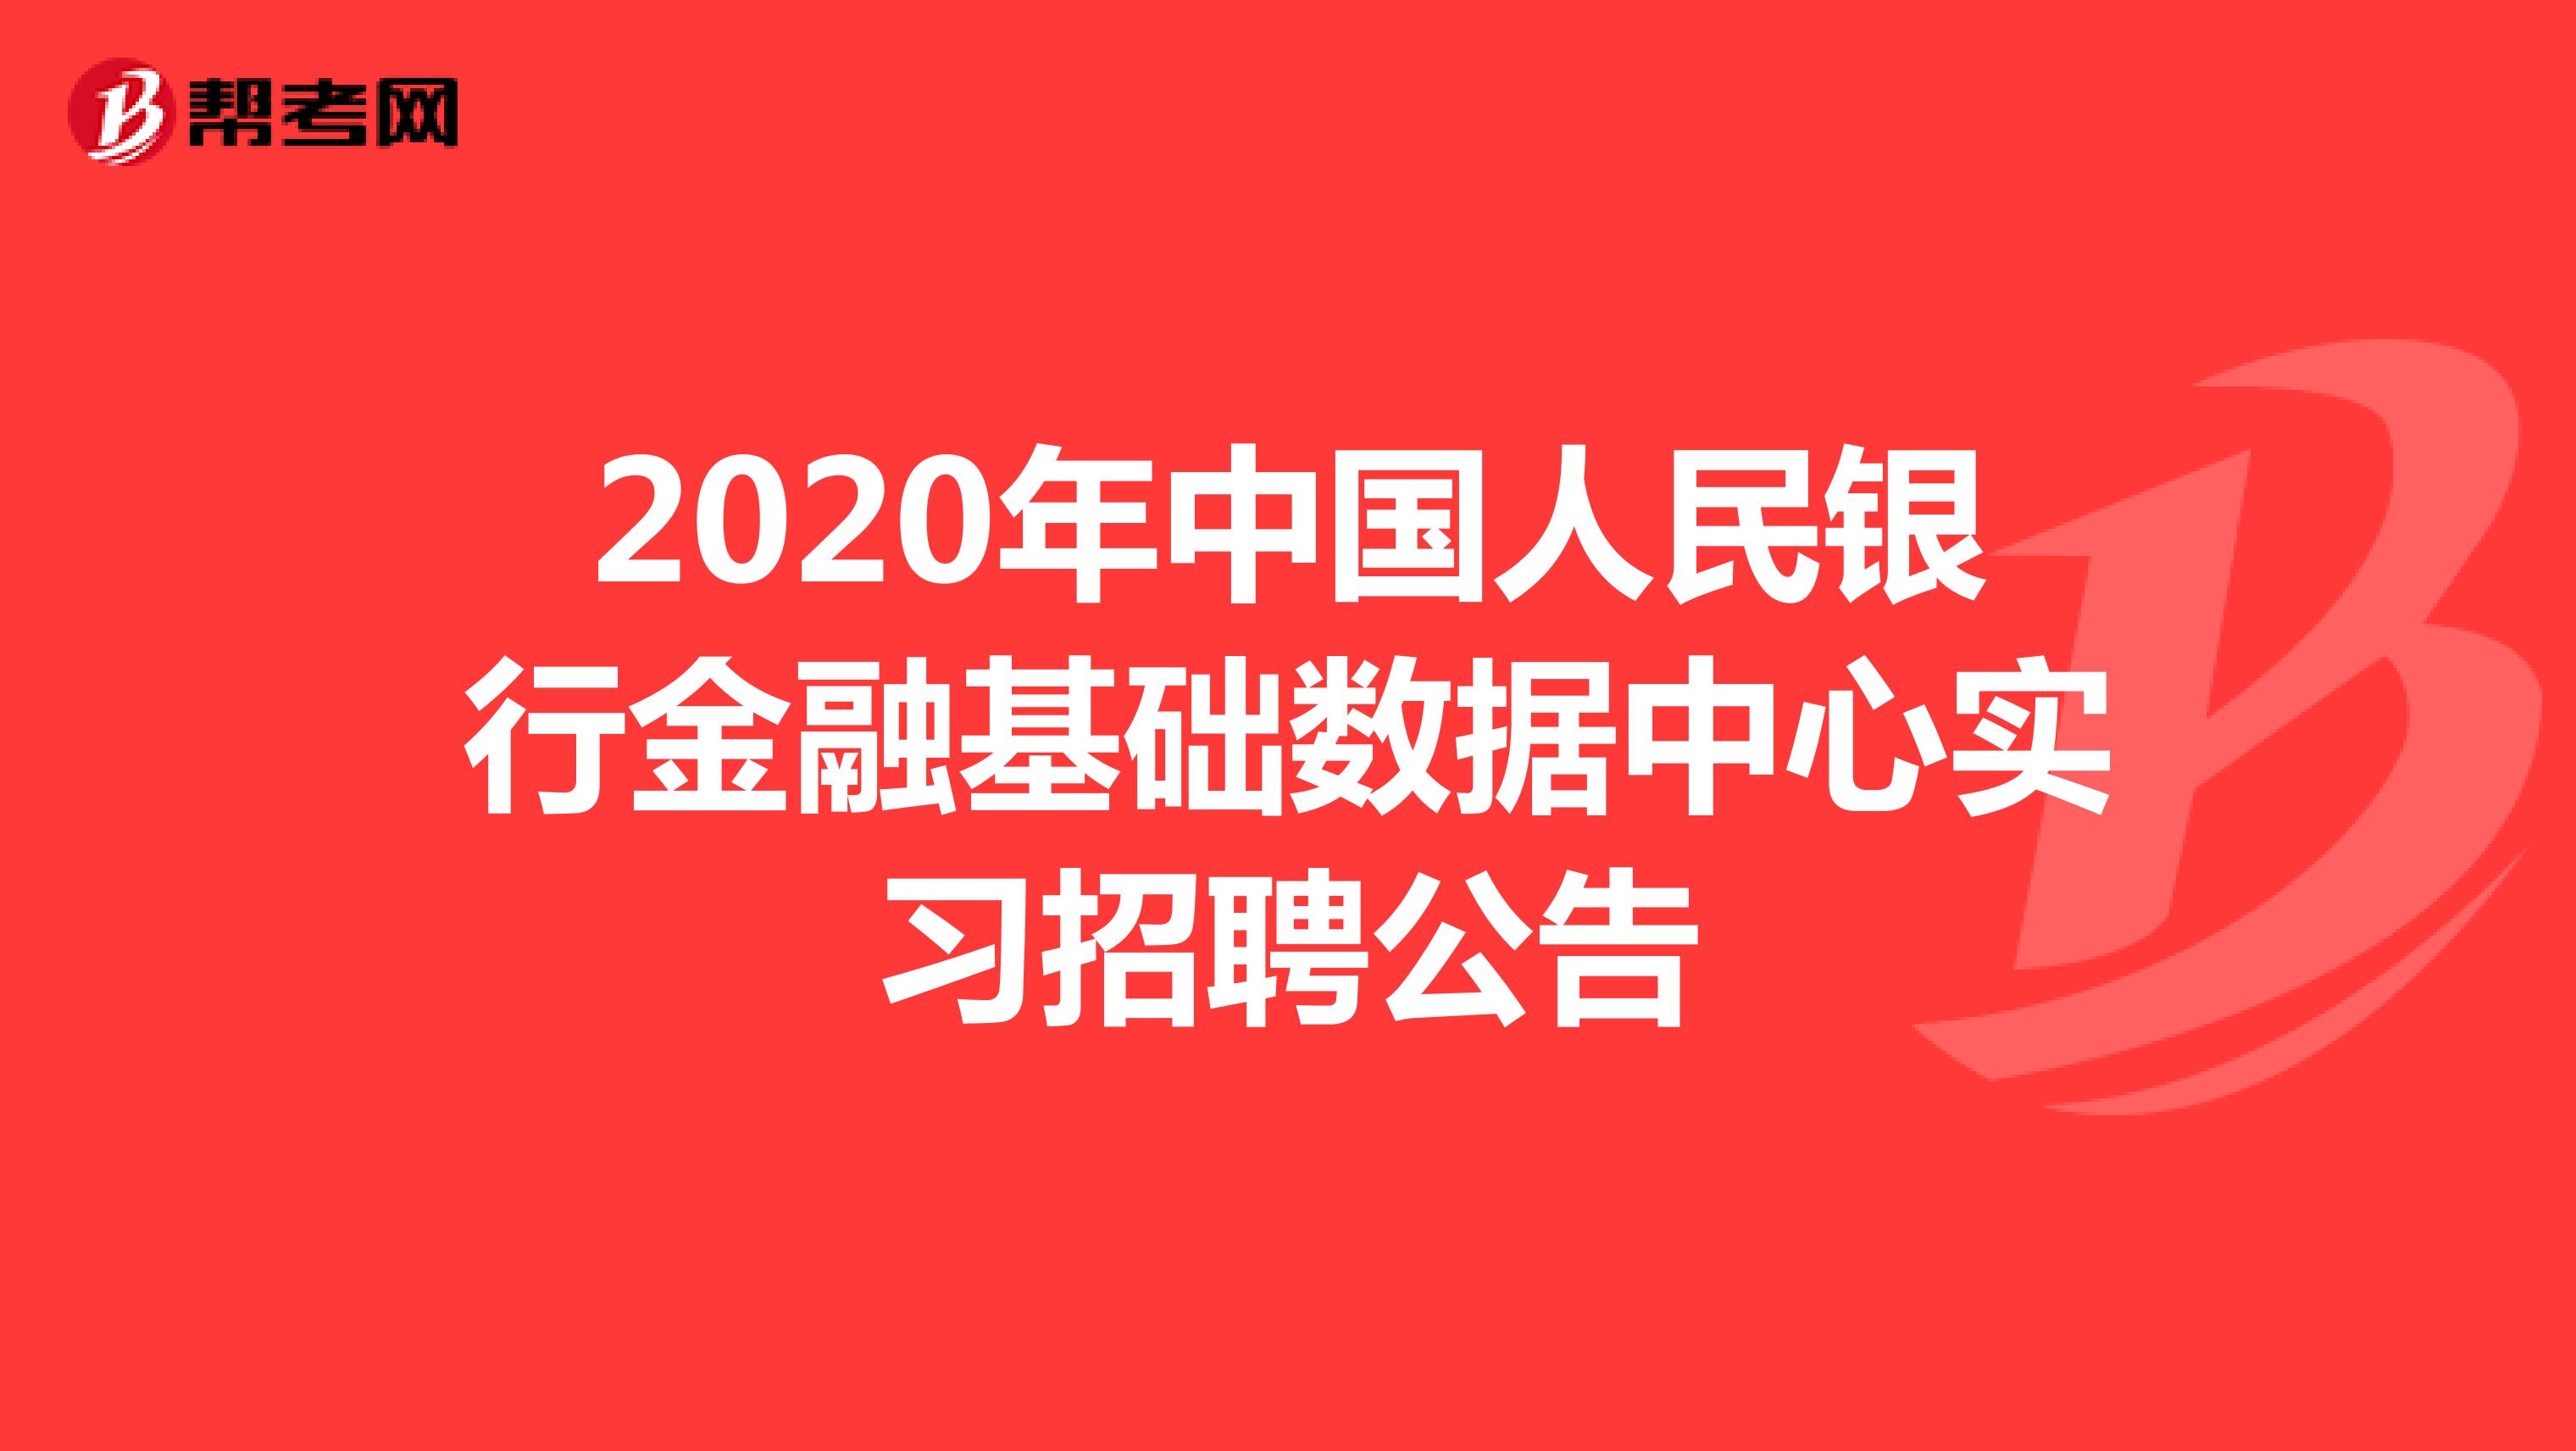 2020年中国人民银行金融基础数据中心实习招聘公告